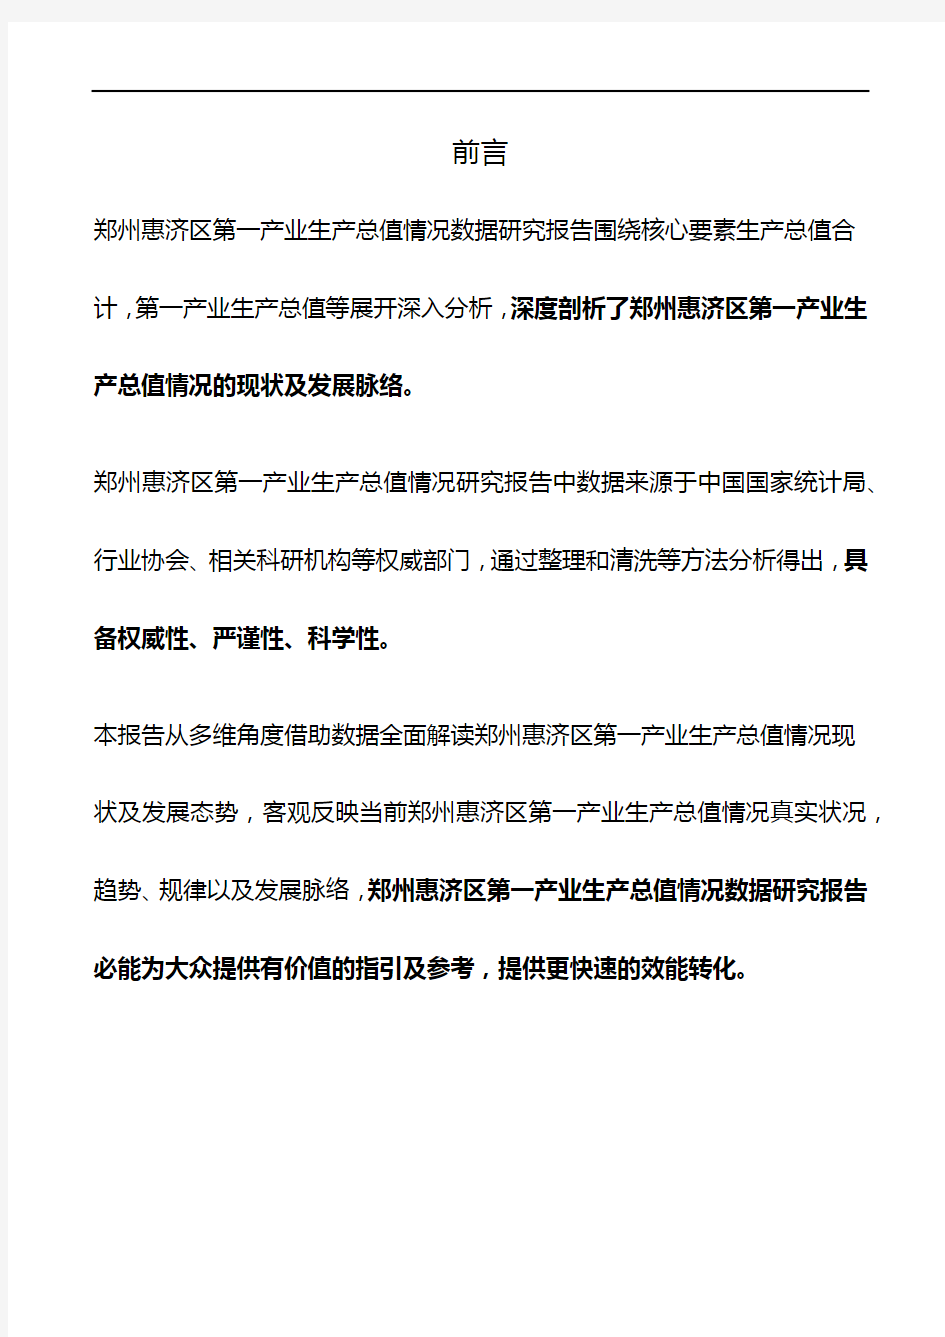 河南省郑州惠济区第一产业生产总值情况数据研究报告2019版